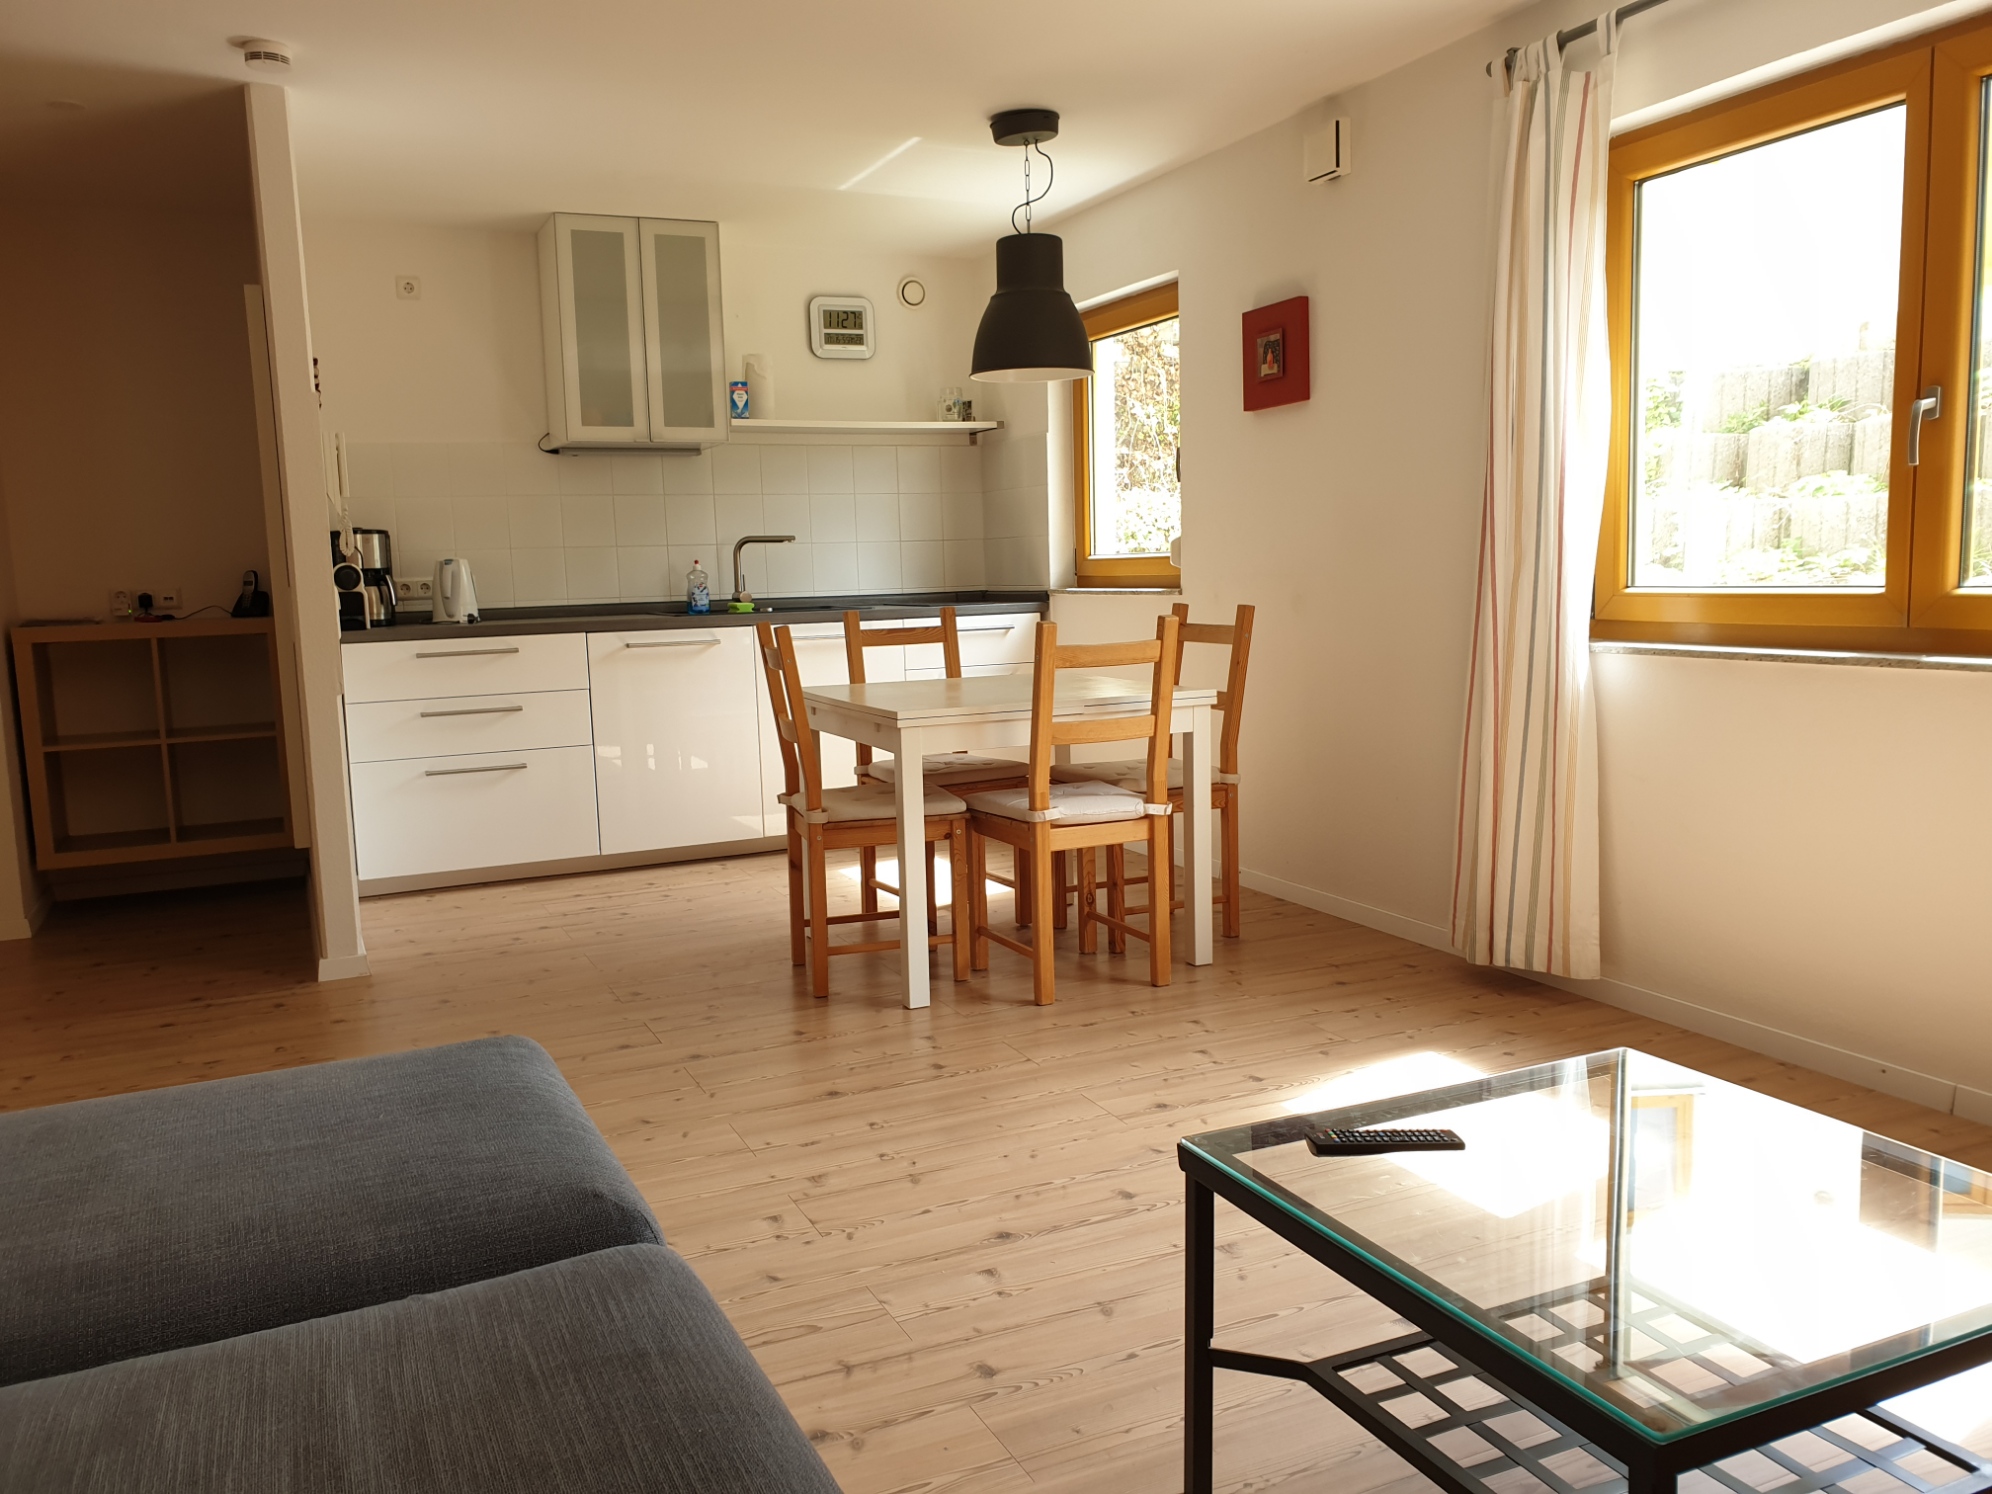 Apartment A - Wohn-Ess-Küchenbereich / Kitchen-Dining-Living